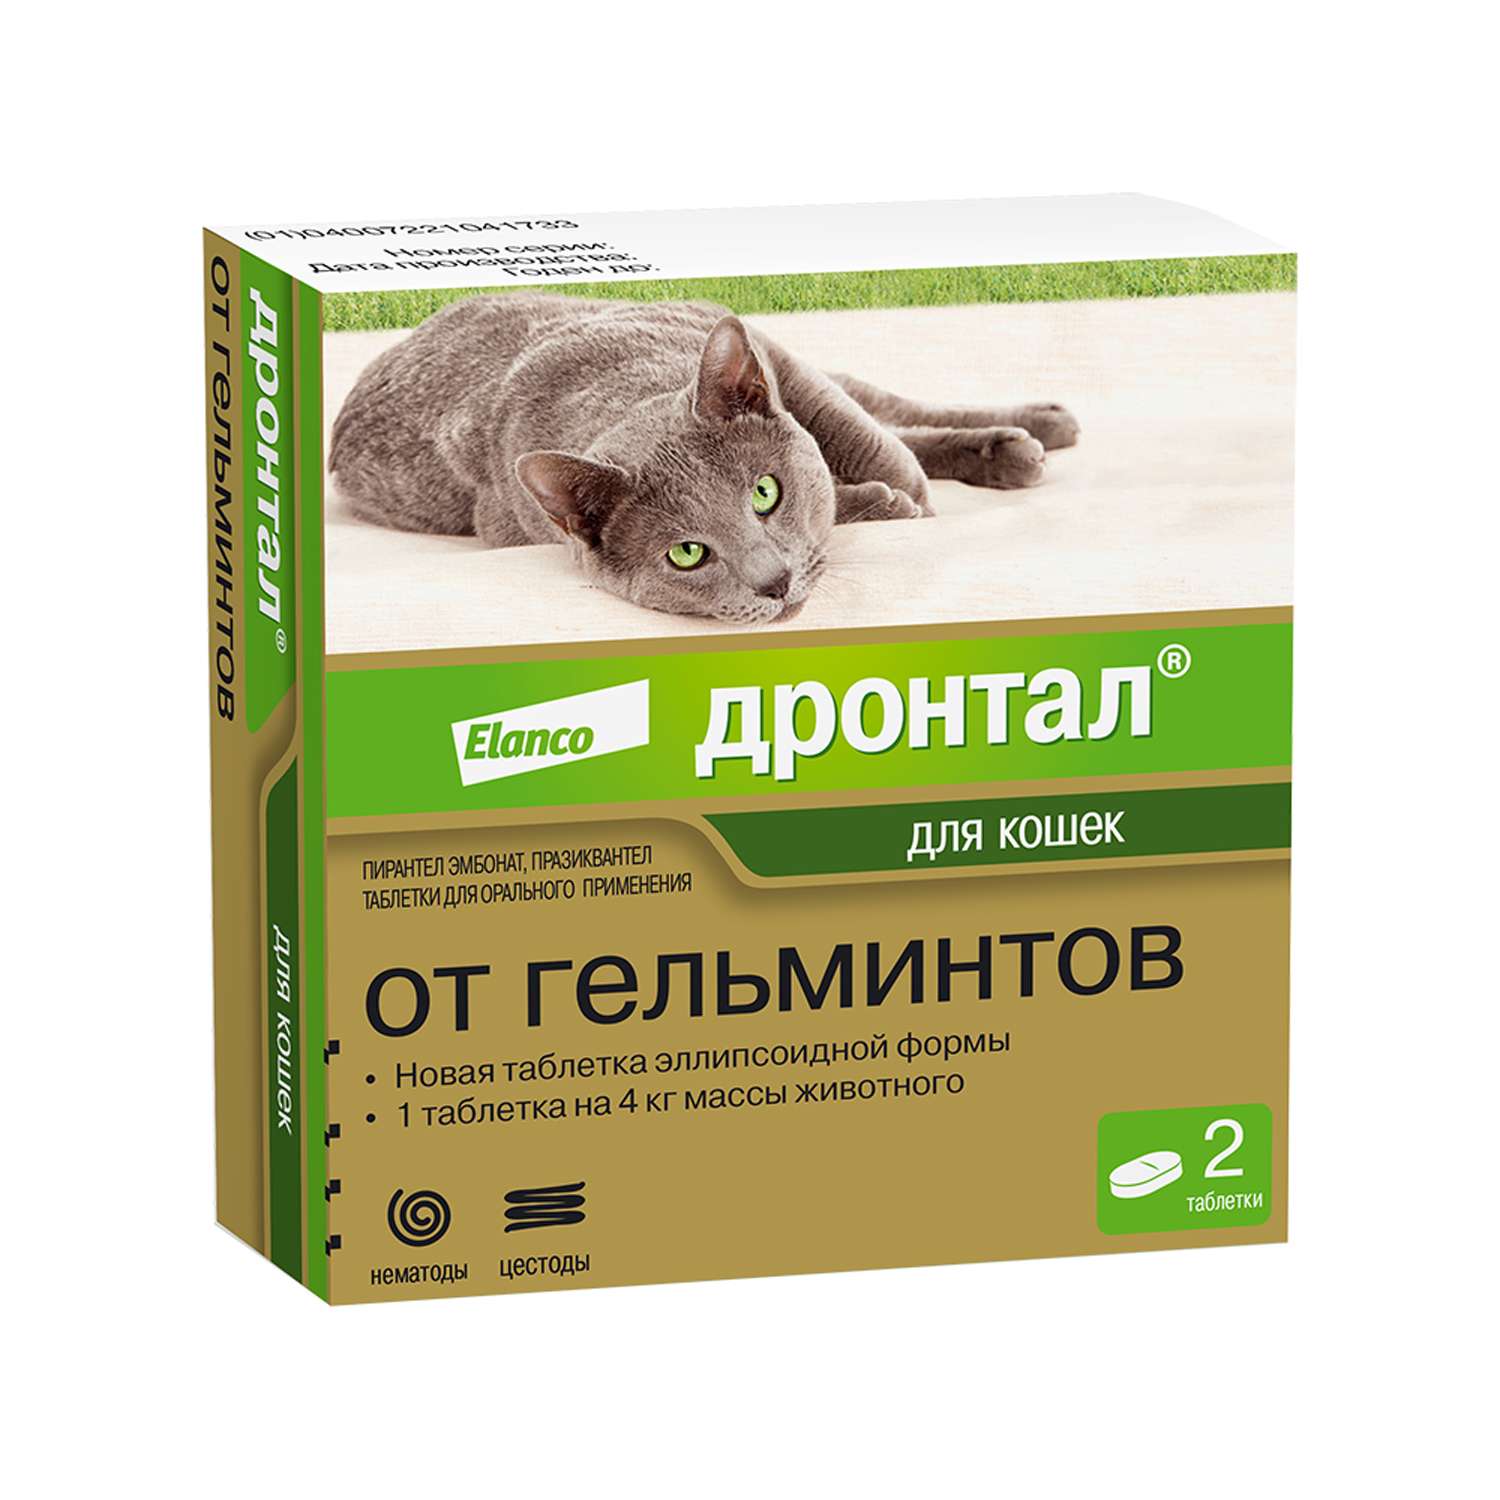 Антигельминтик для кошек Elanco Дронтал плюс 2таблетки купить по цене 595 ₽  с доставкой в Москве и России, отзывы, фото